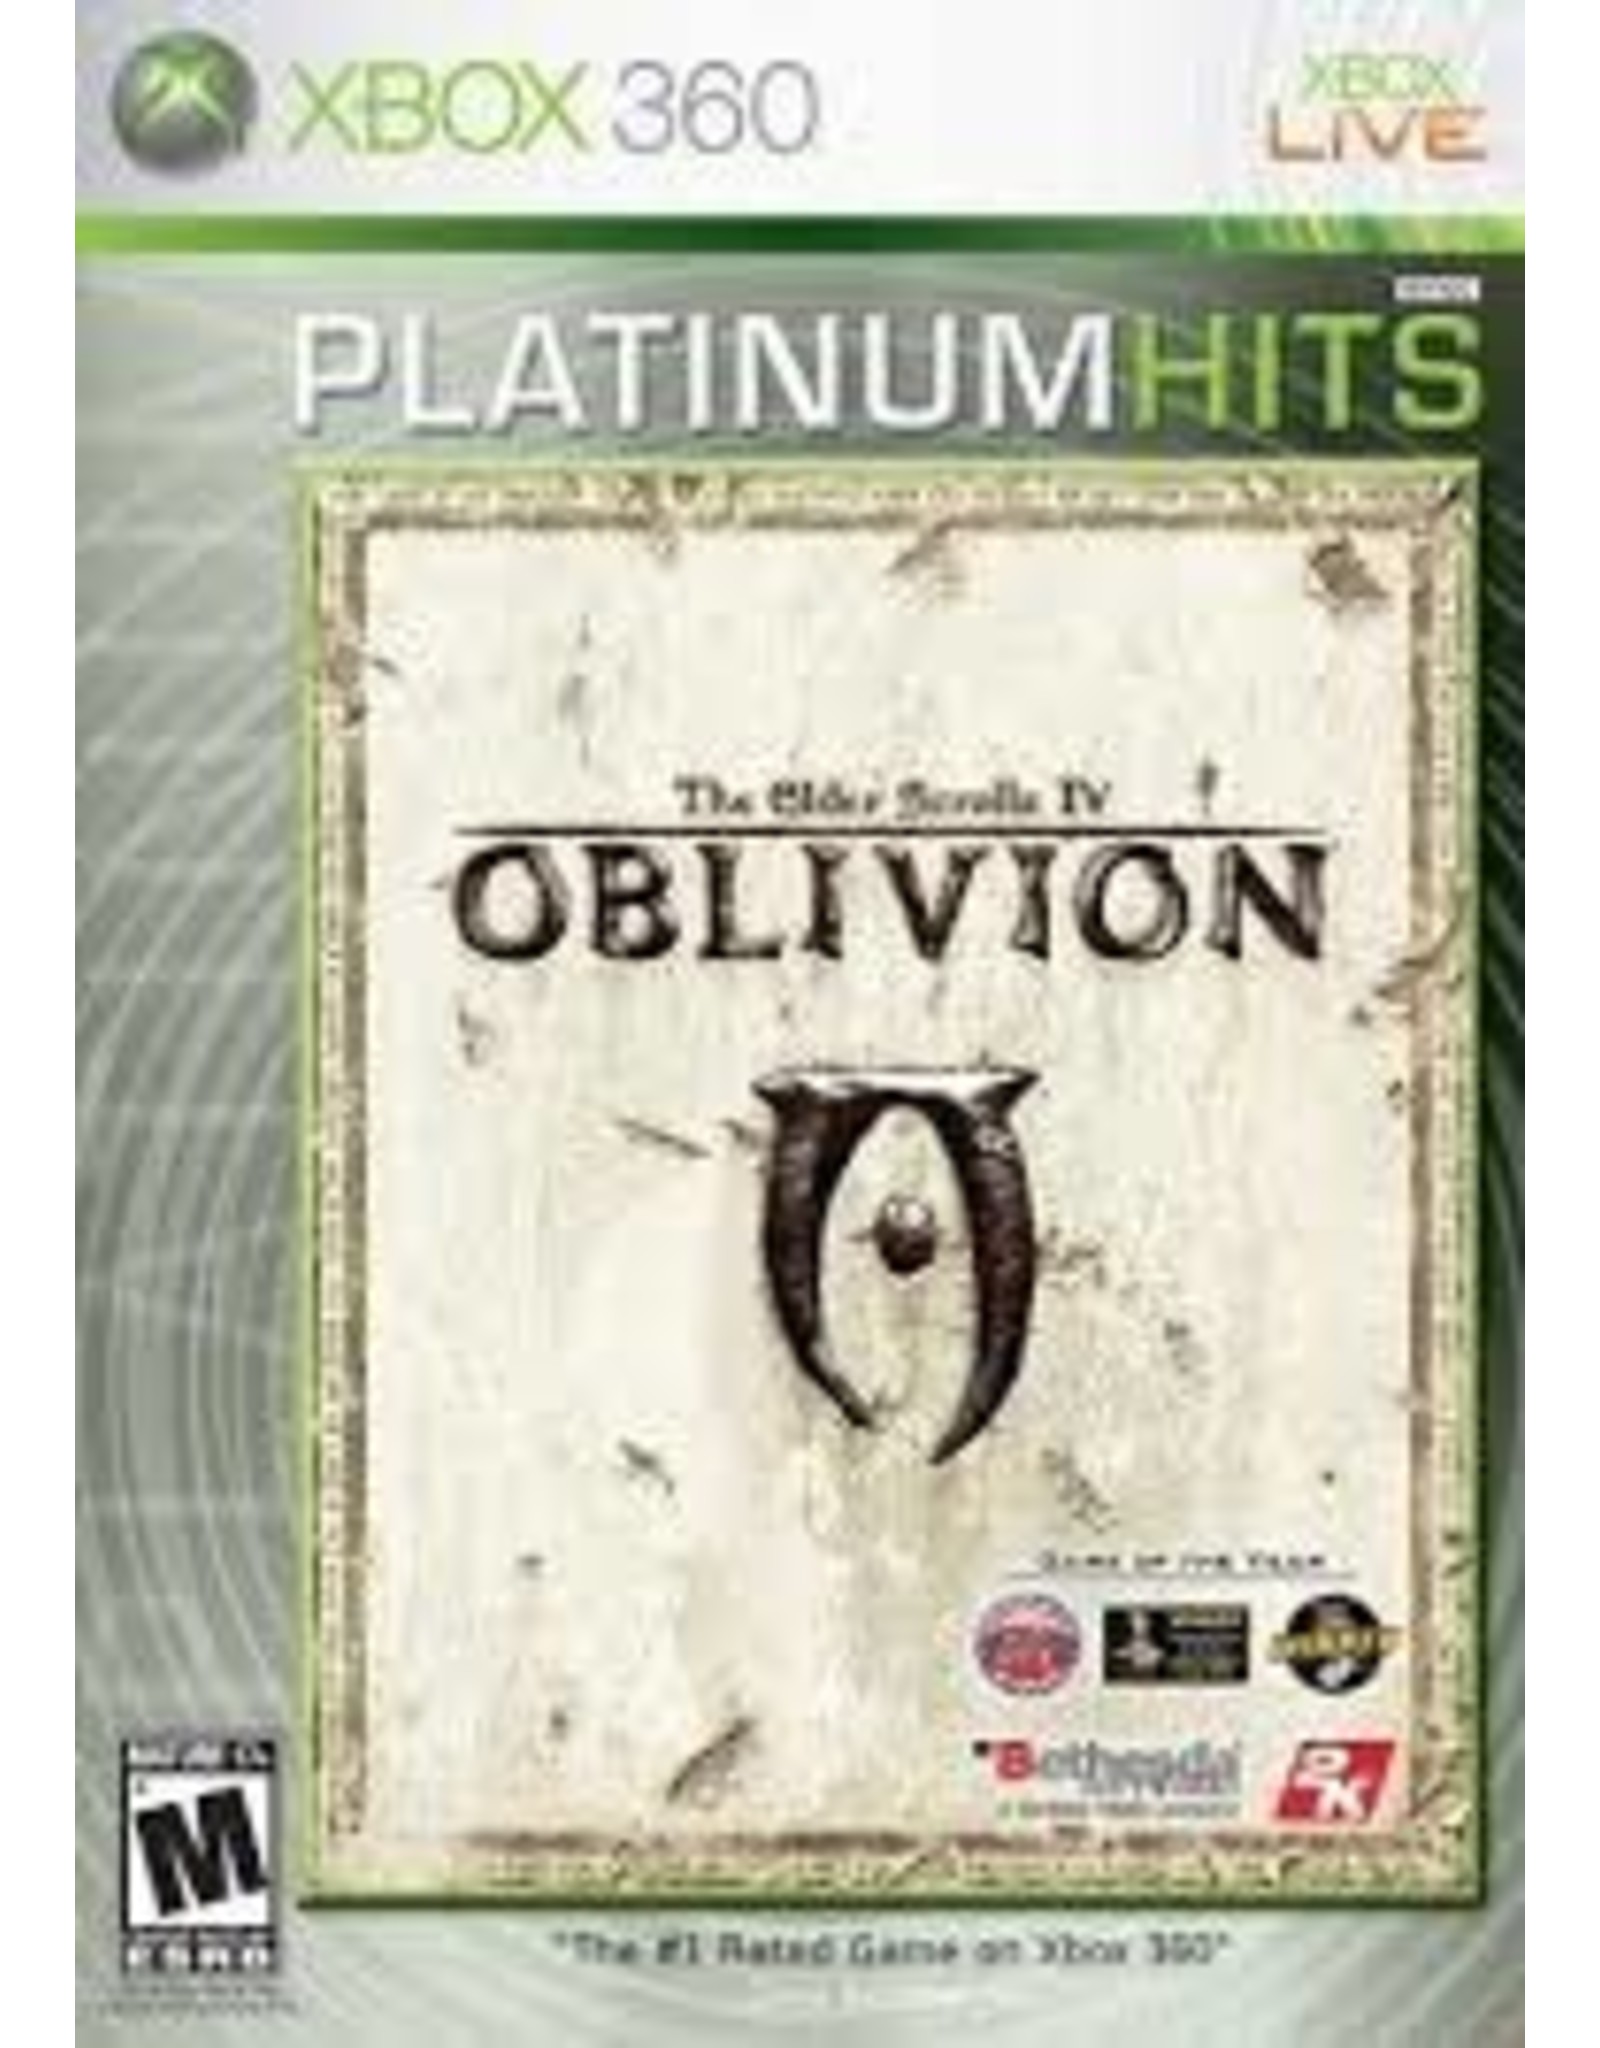 Xbox 360 Oblivion, Elder Scrolls IV (Platinum Hits, No Manual)